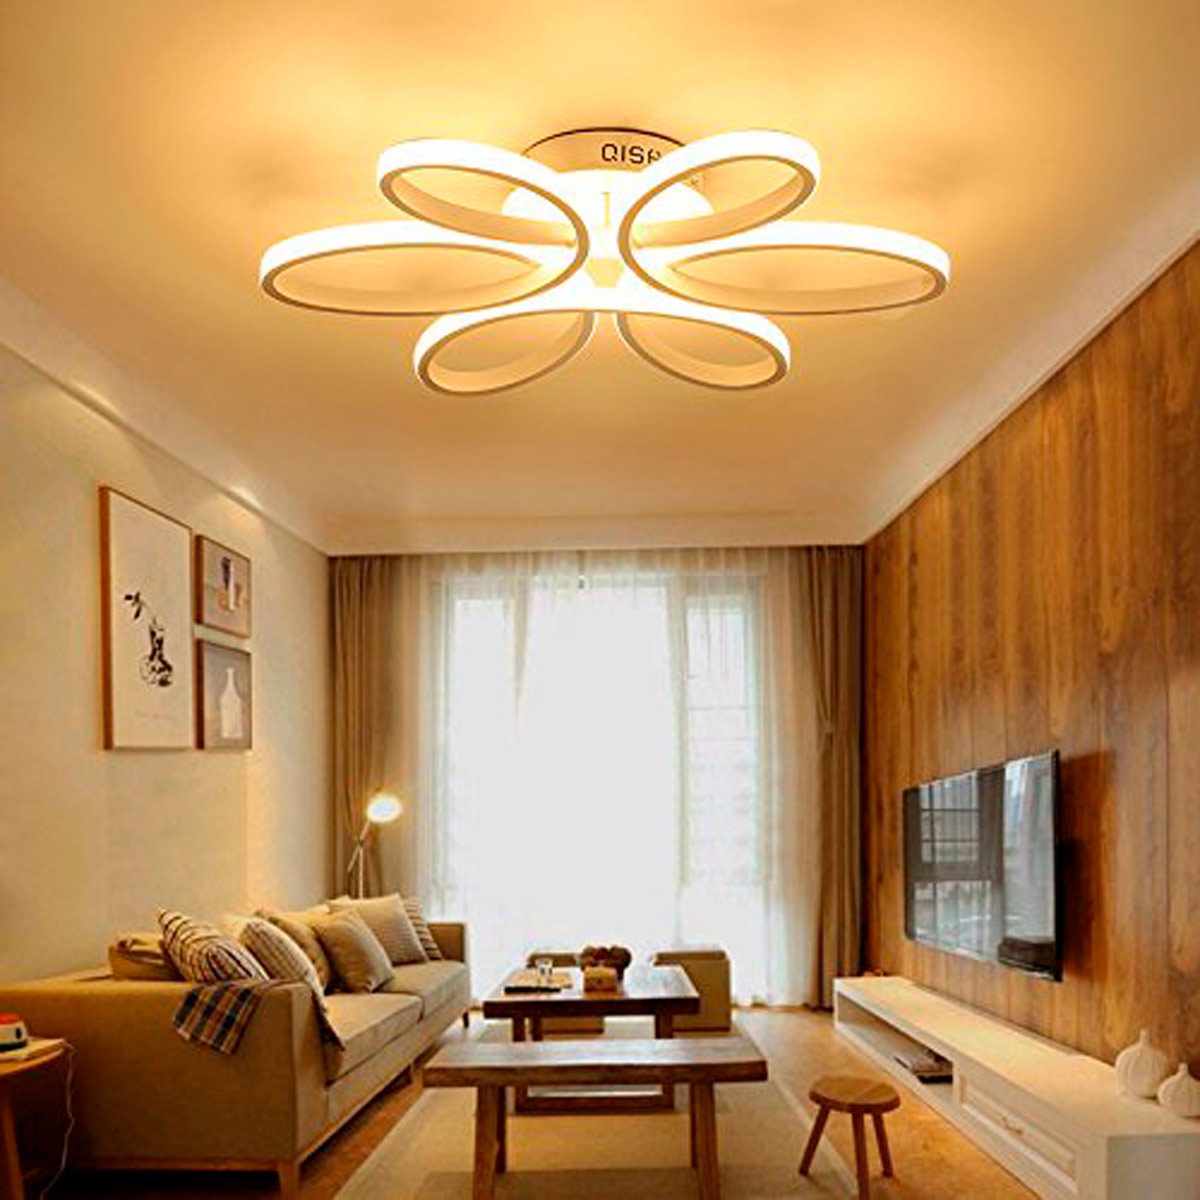 Lighting Ideas For Living Room - Room Living Lamps Lighting Light ...